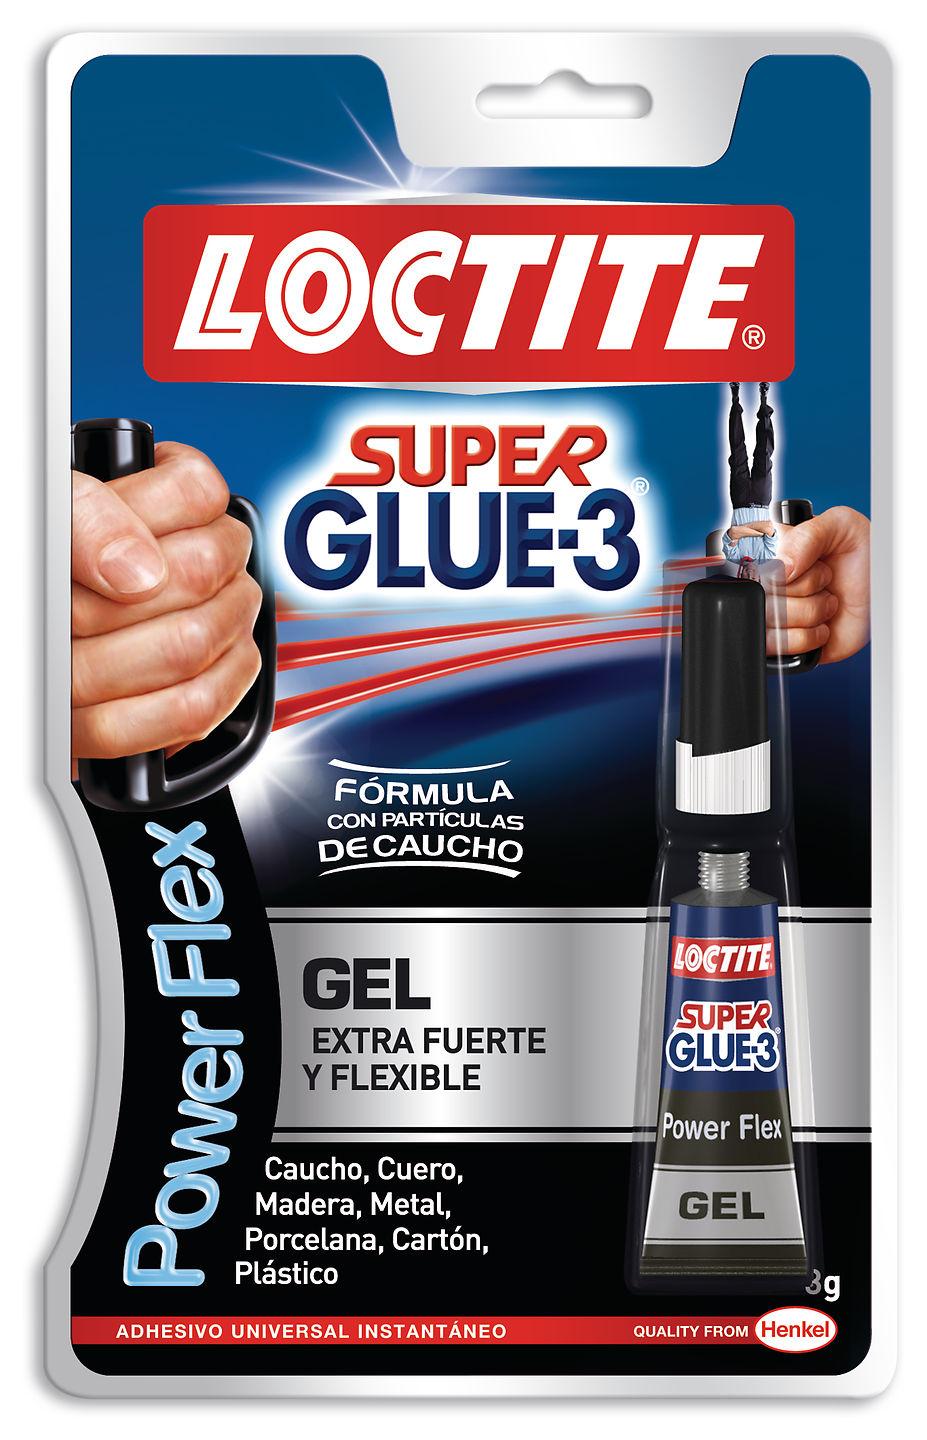 Foto Loctite Pegamento Super Glue-3 Power Flex